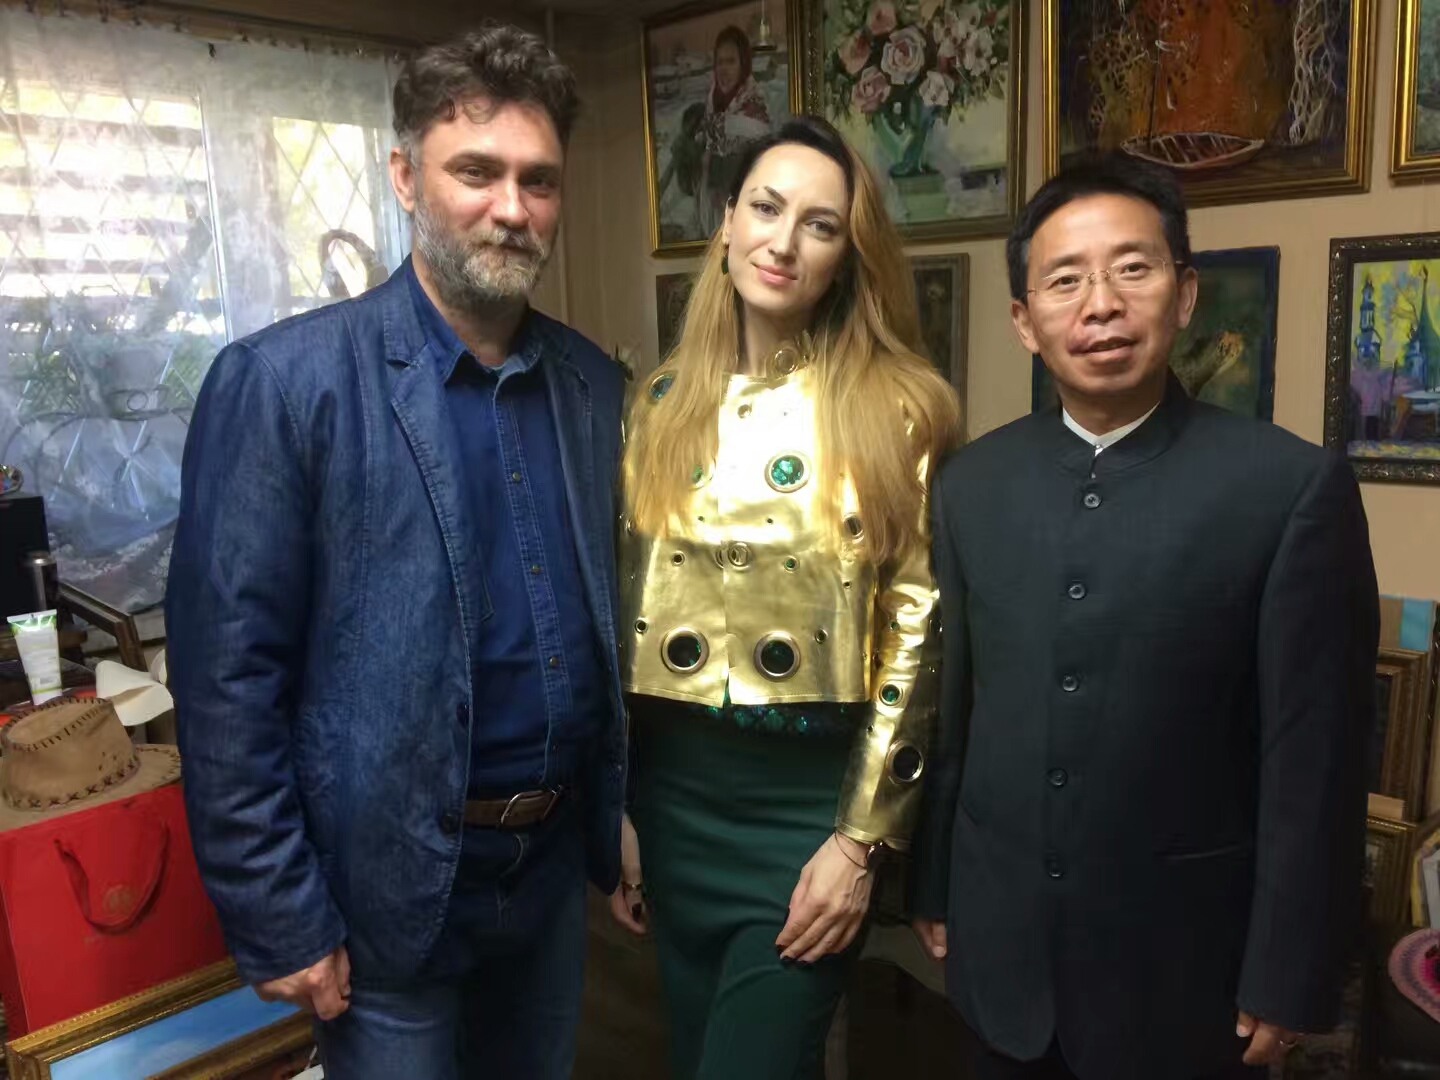 Встретились с Президентом компании "Шёлковый путь" Shaohui Wang (г.Сиань). Обсудили культурное сотрудничество и обмены между Иркутском и провинцией Шанси в рамках построения российско-китайского Культурного пояса Чайного пути.